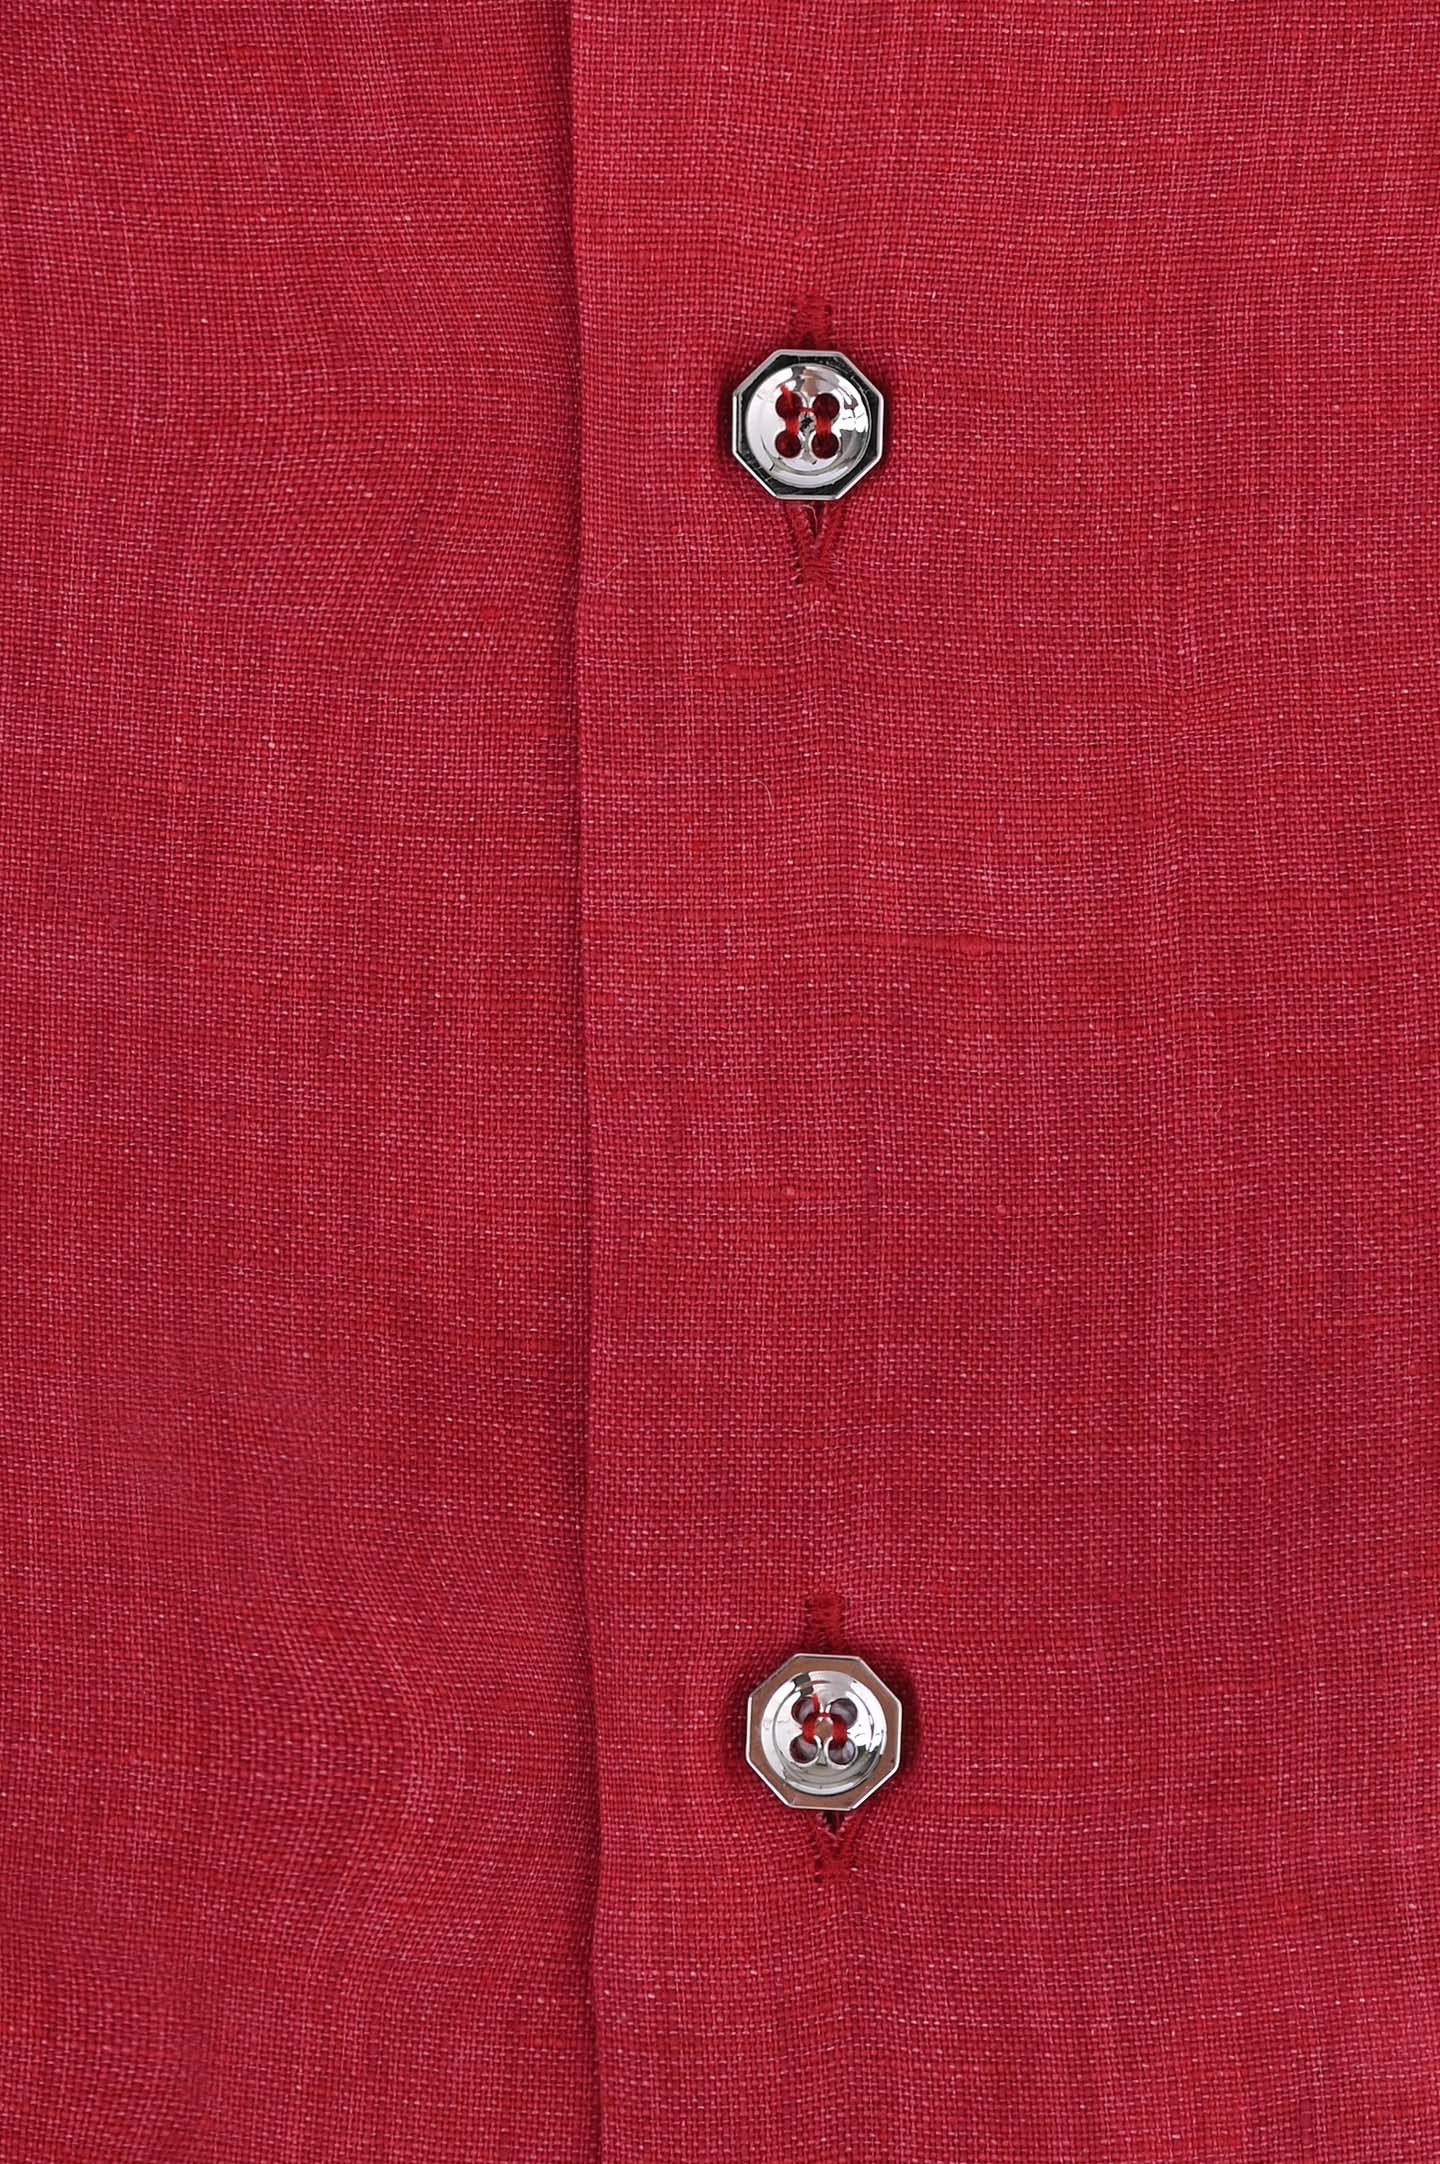 Рубашка STEFANO RICCI MC006031 L1180, цвет: Красный, Мужской